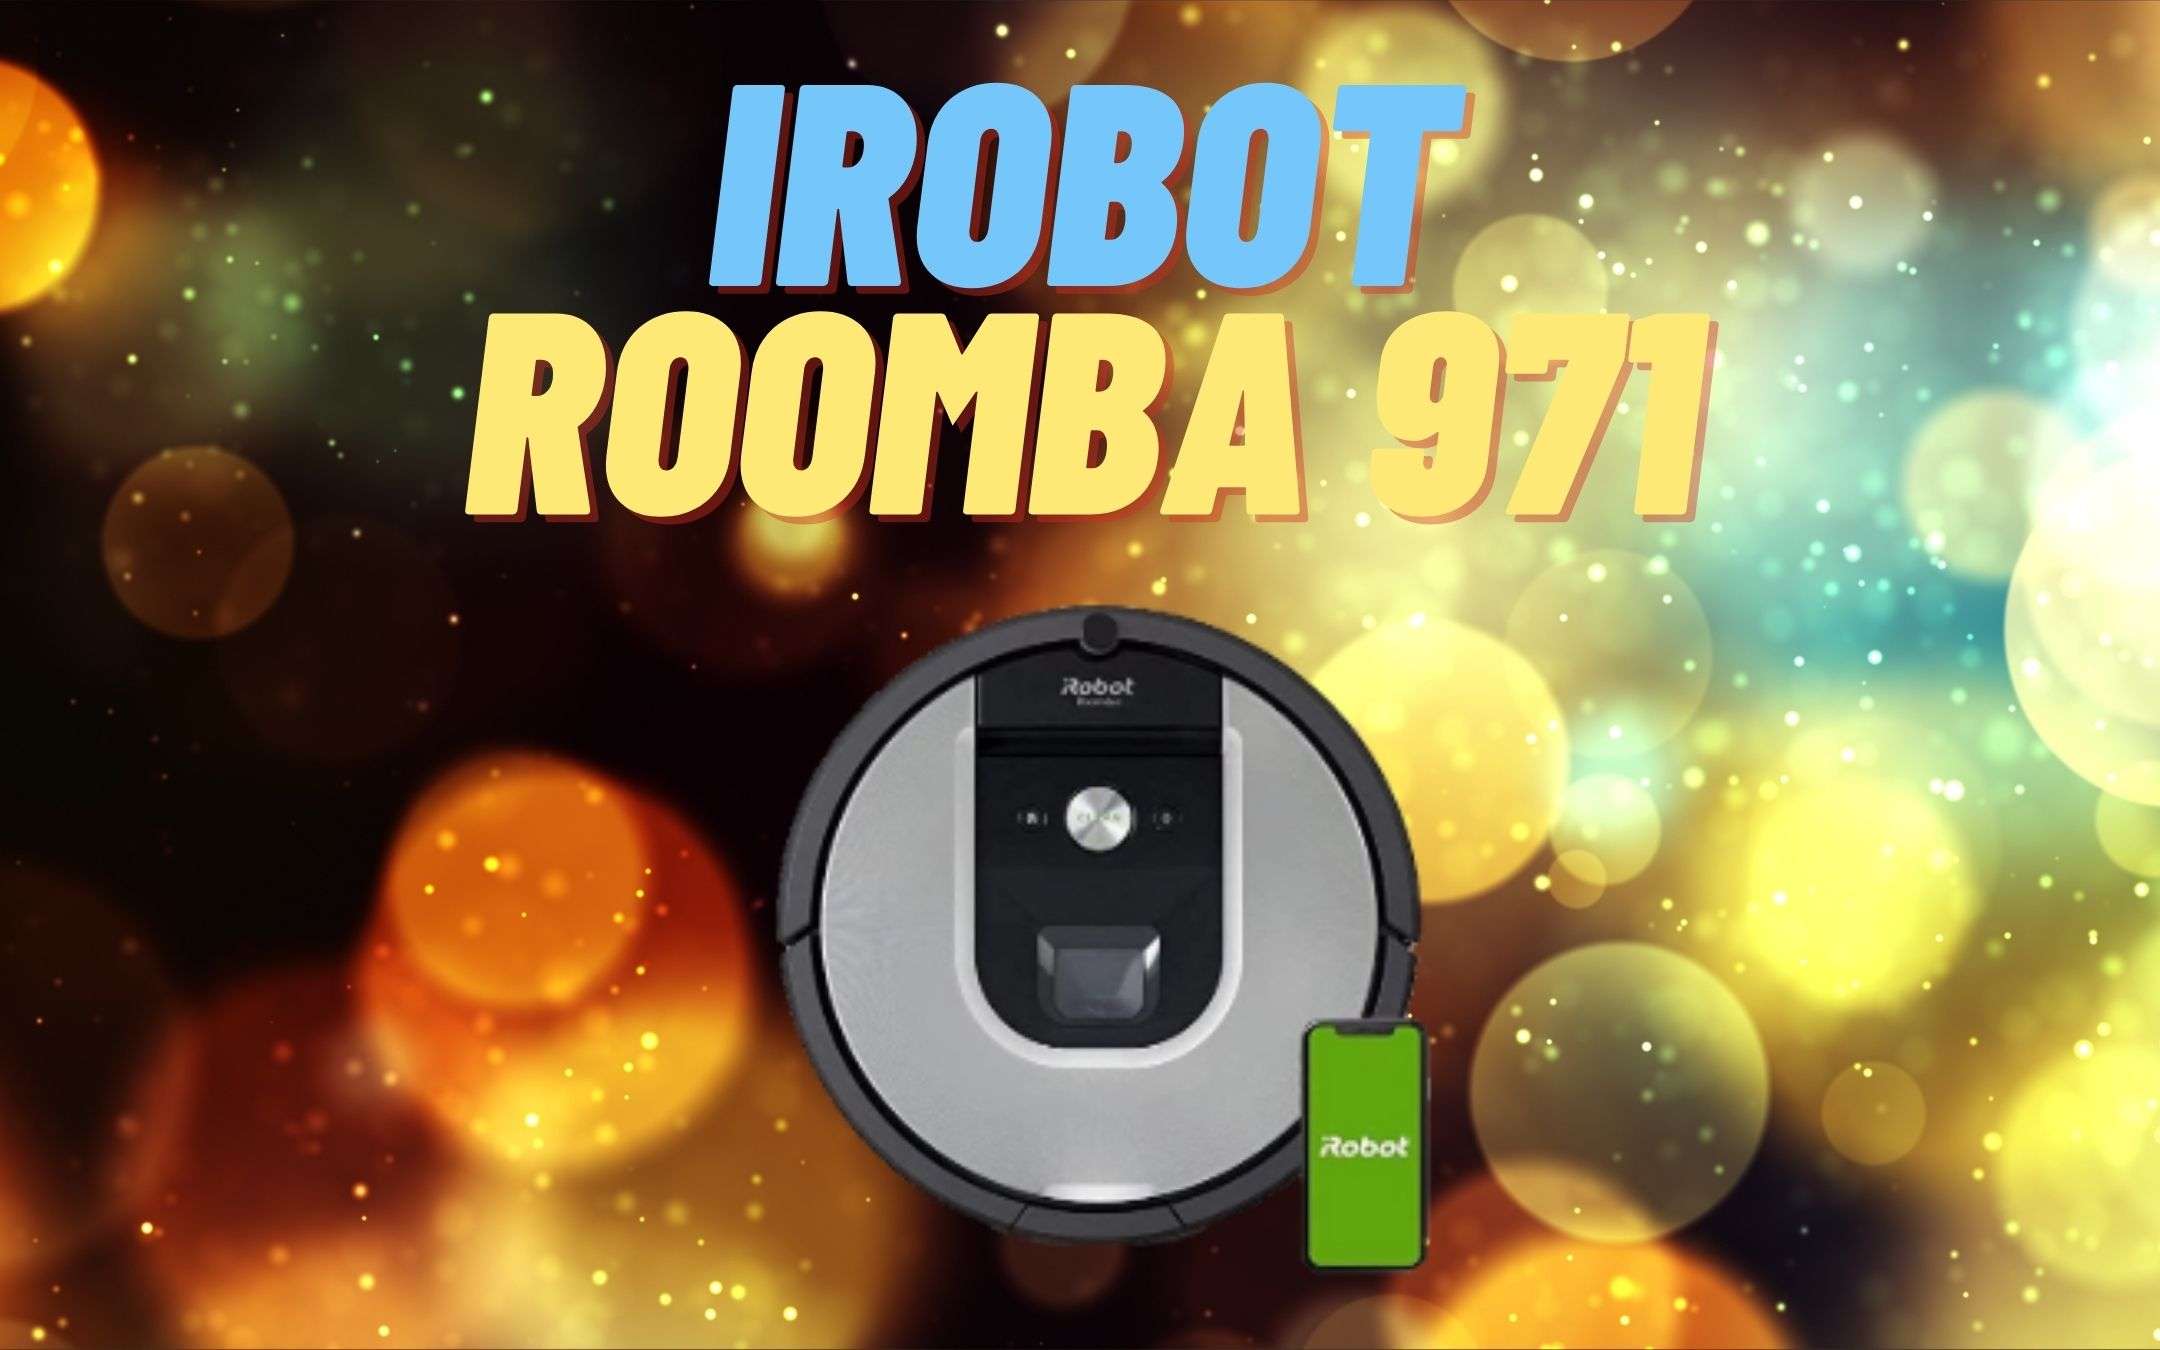 Robot aspirapolvere Roomba 971 scontato di 100€!